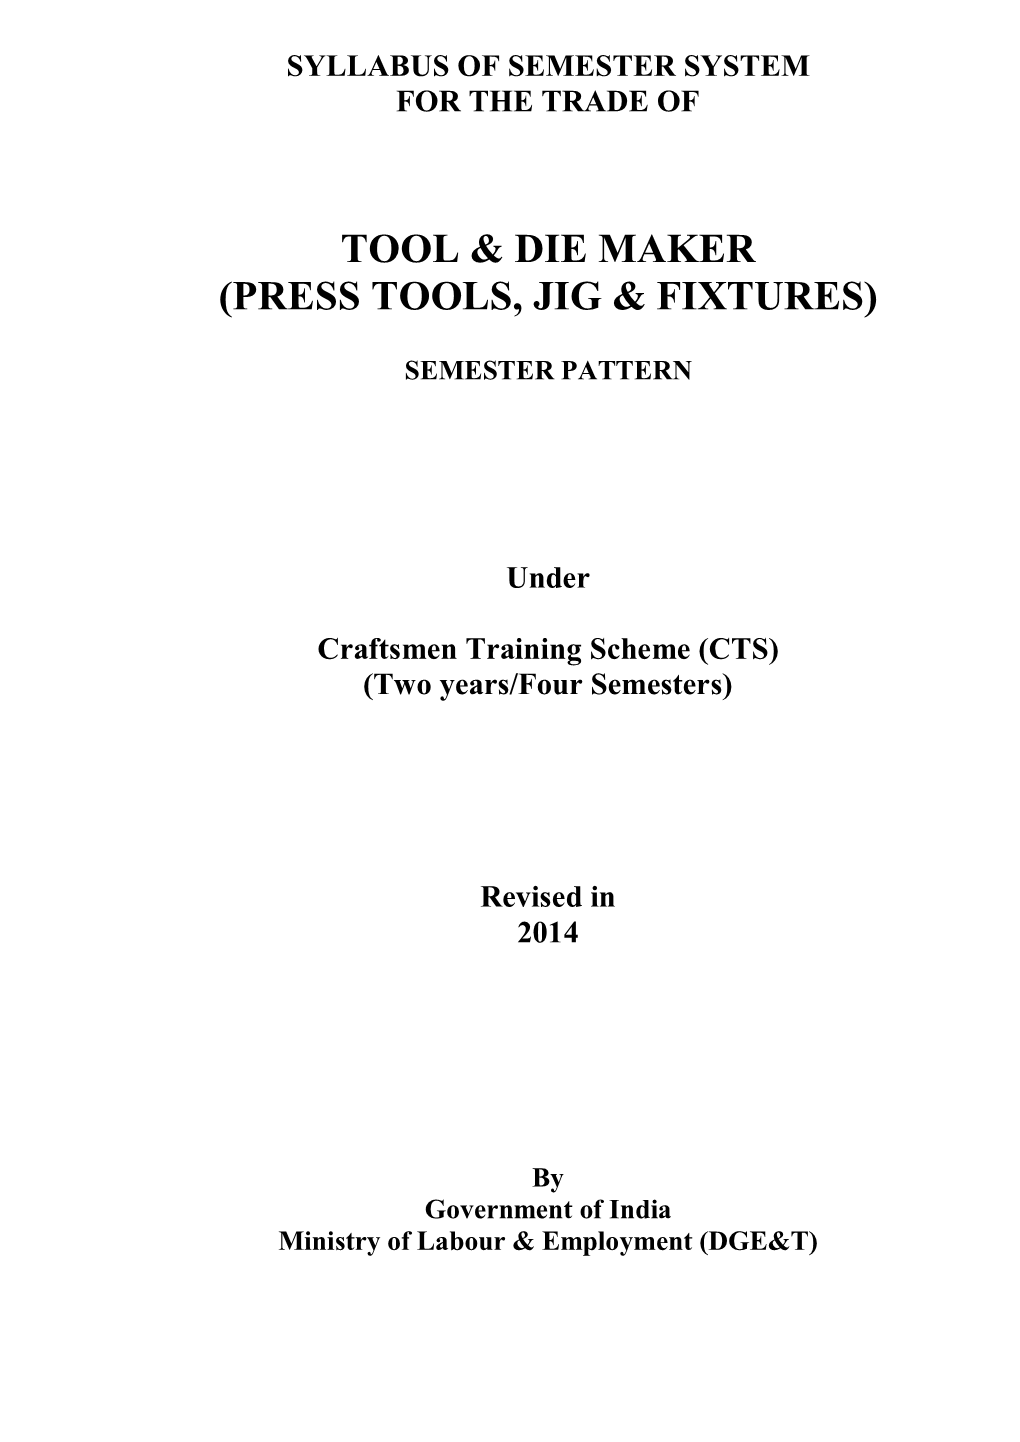 Tool & Die Maker (Press Tools, Jig & Fixtures)